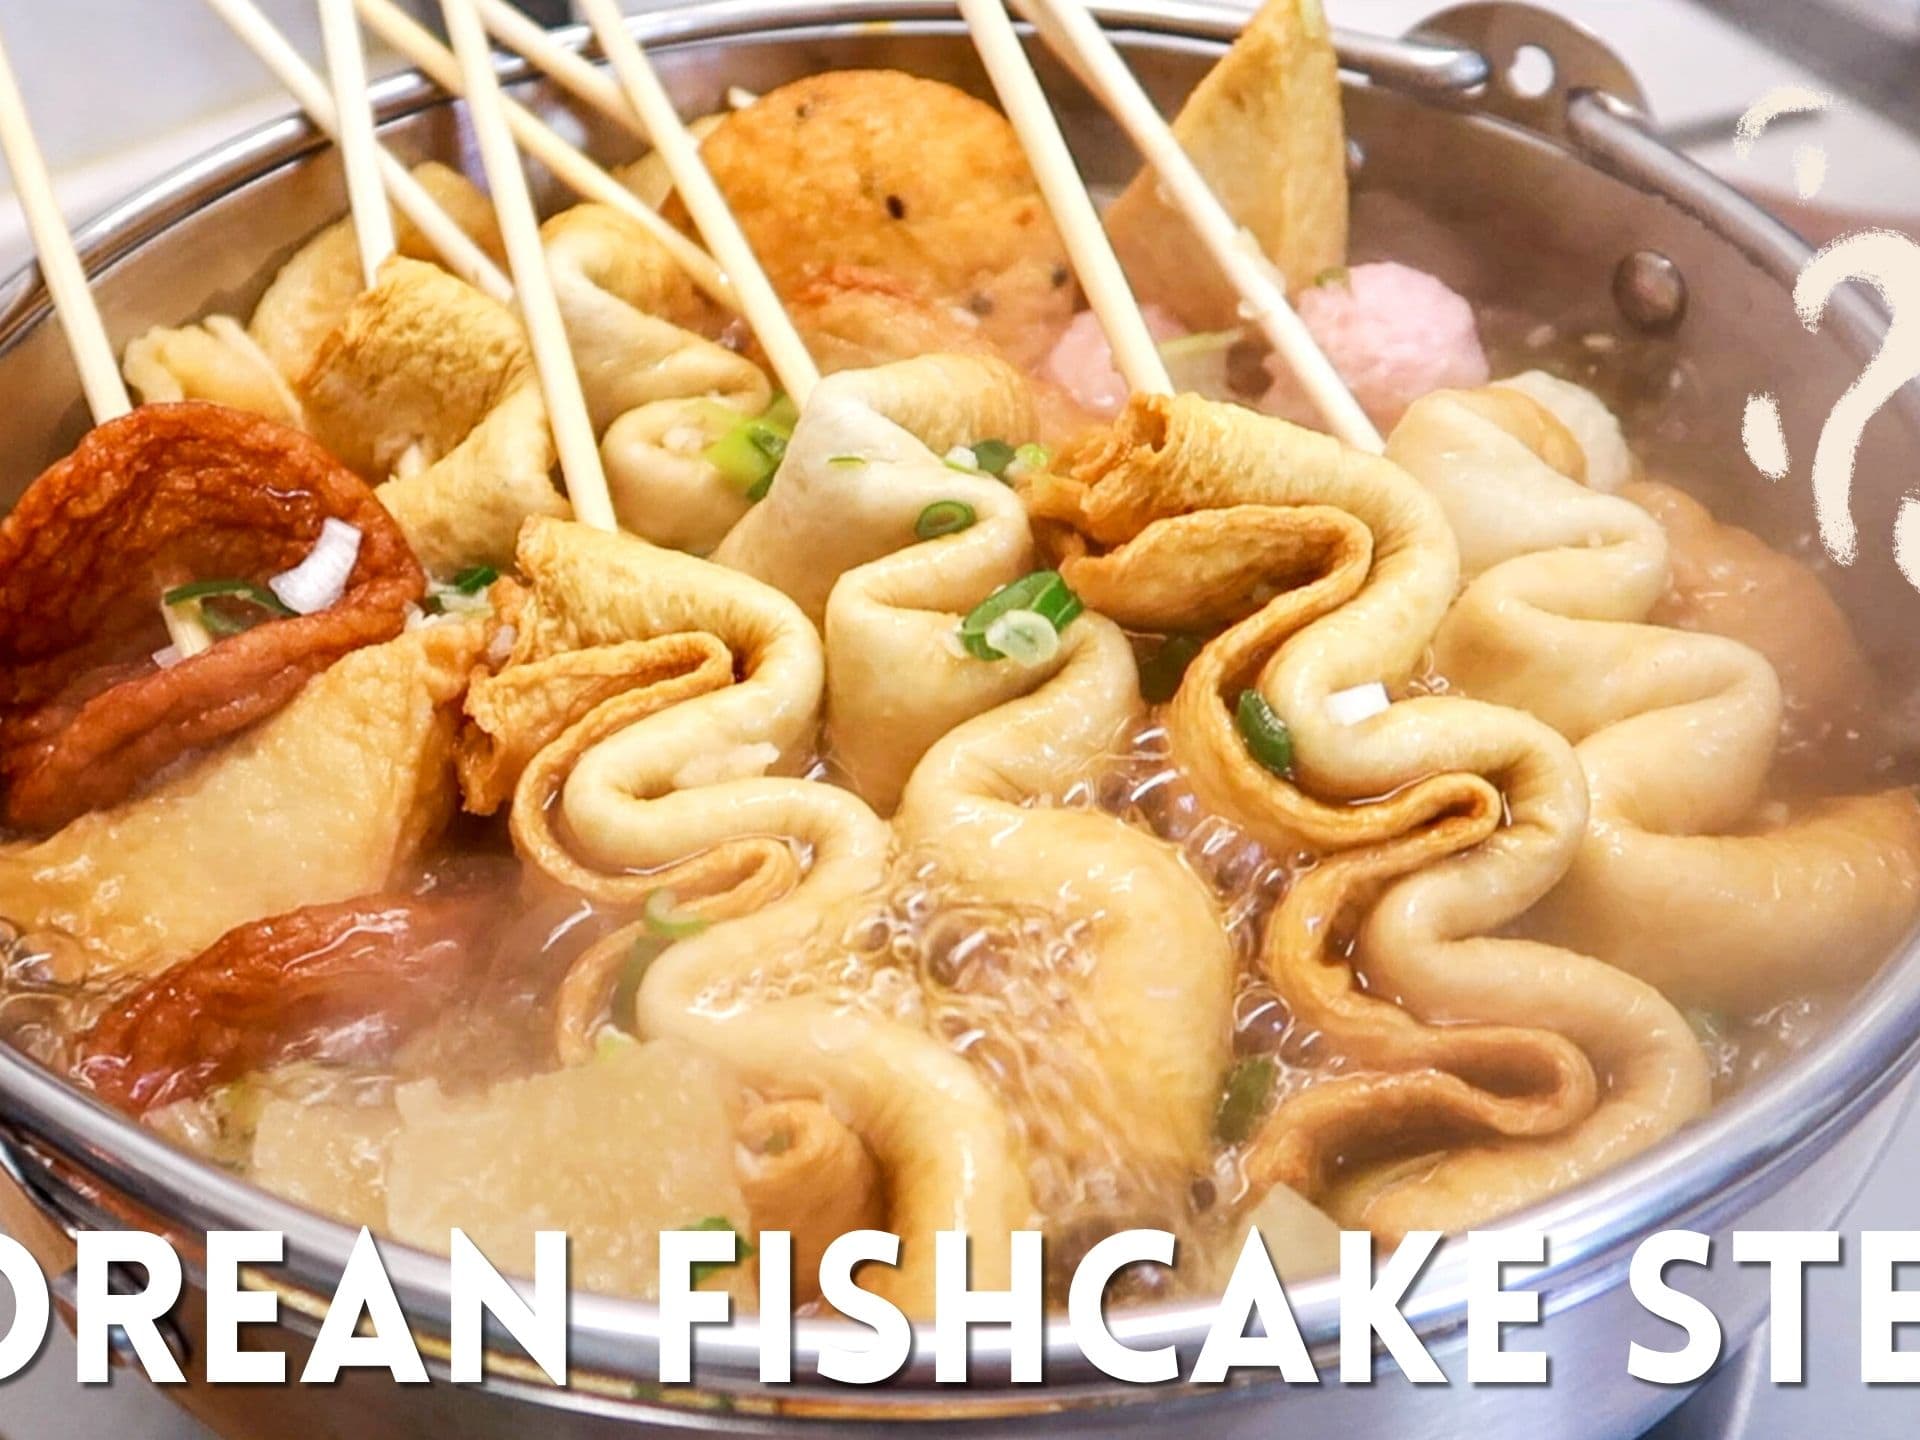 Korean Stir-Fried Fish Cake (Eomuk Bokkeum) - CJ Eats Recipes